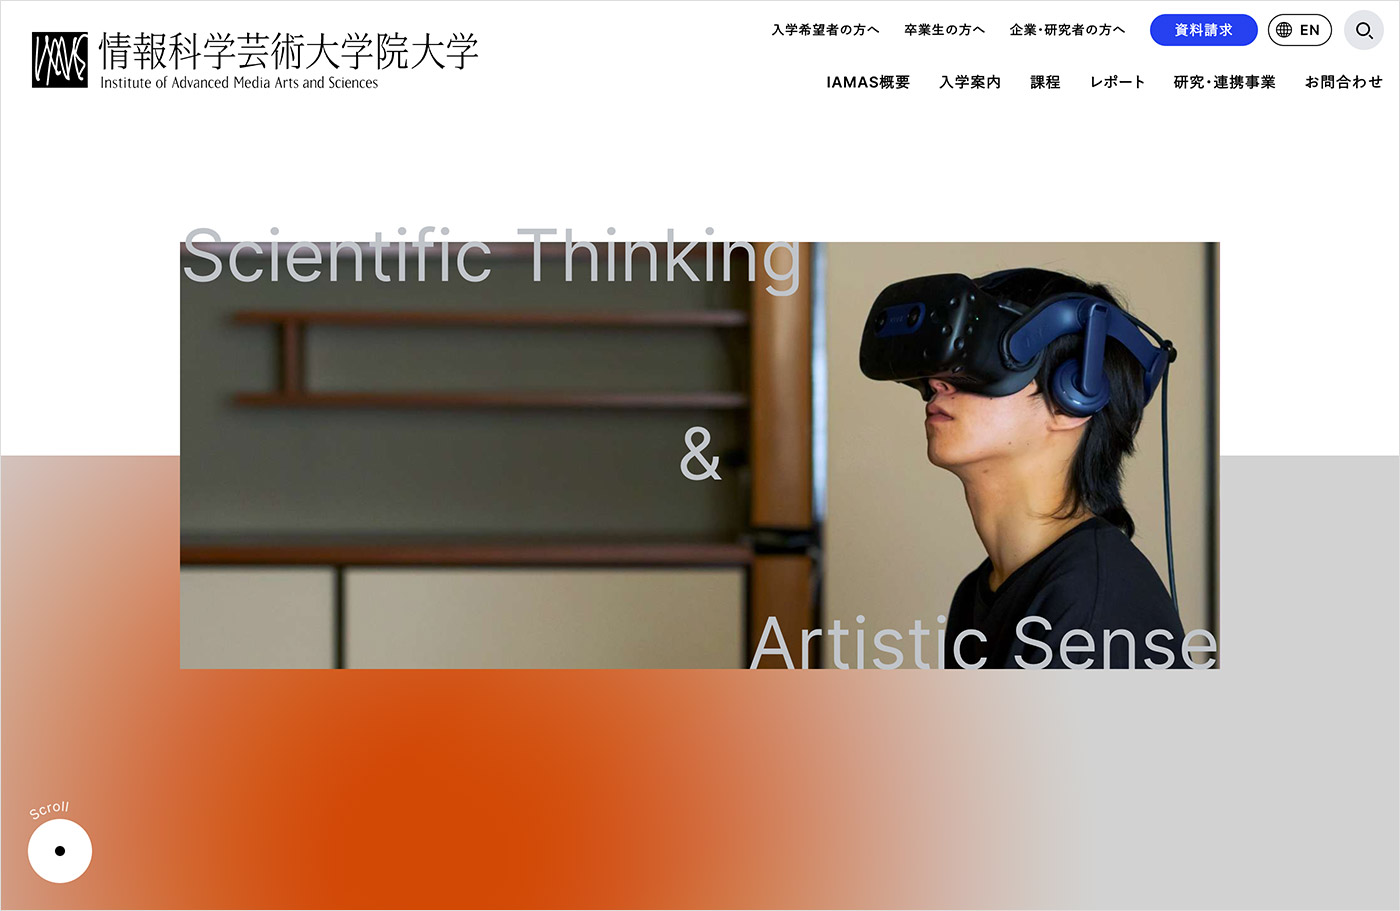 情報科学芸術大学院大学 [IAMAS]ウェブサイトの画面キャプチャ画像